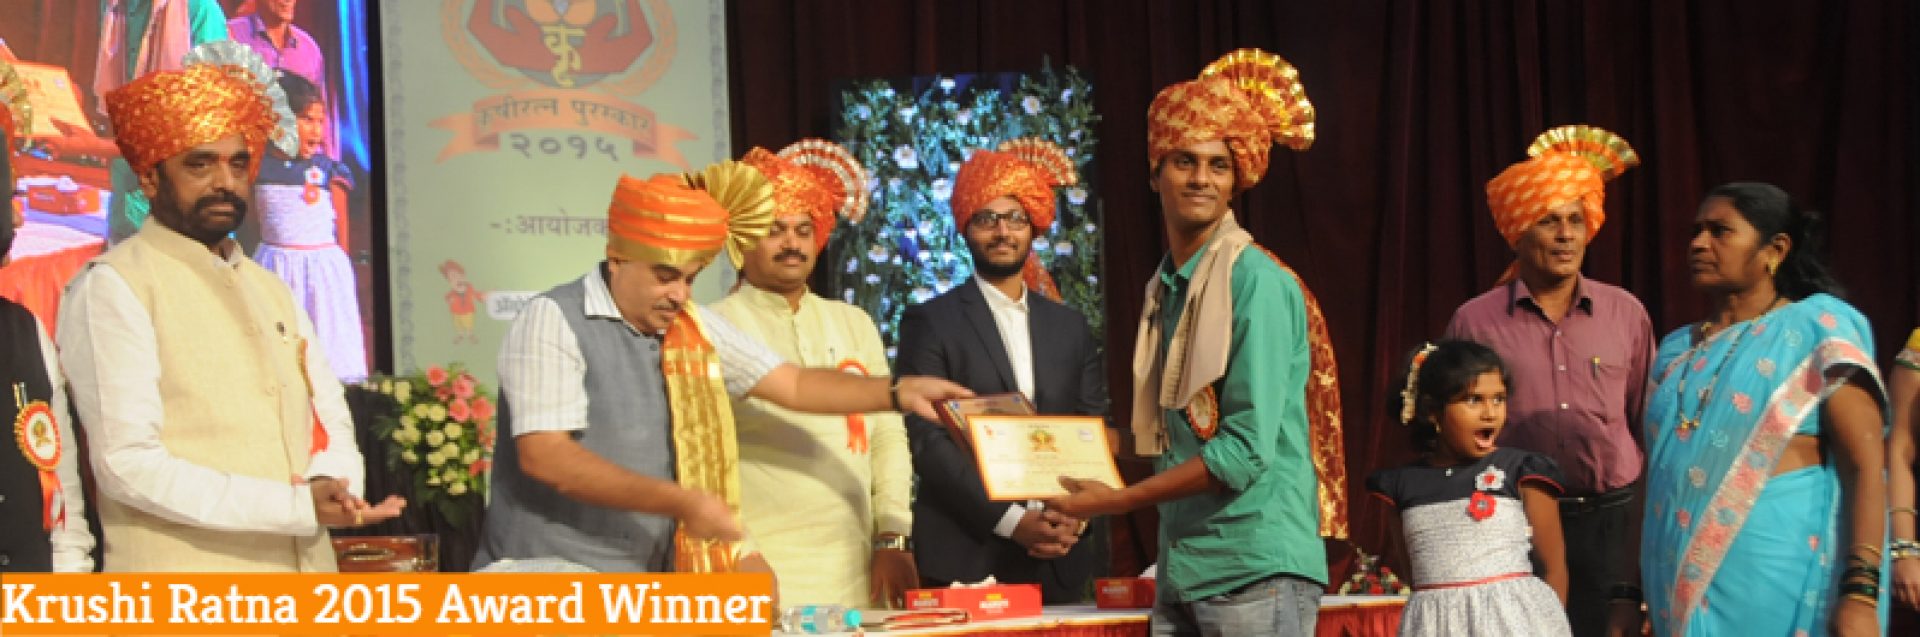 cropped krushi Ratna 2015 Awrd Winner